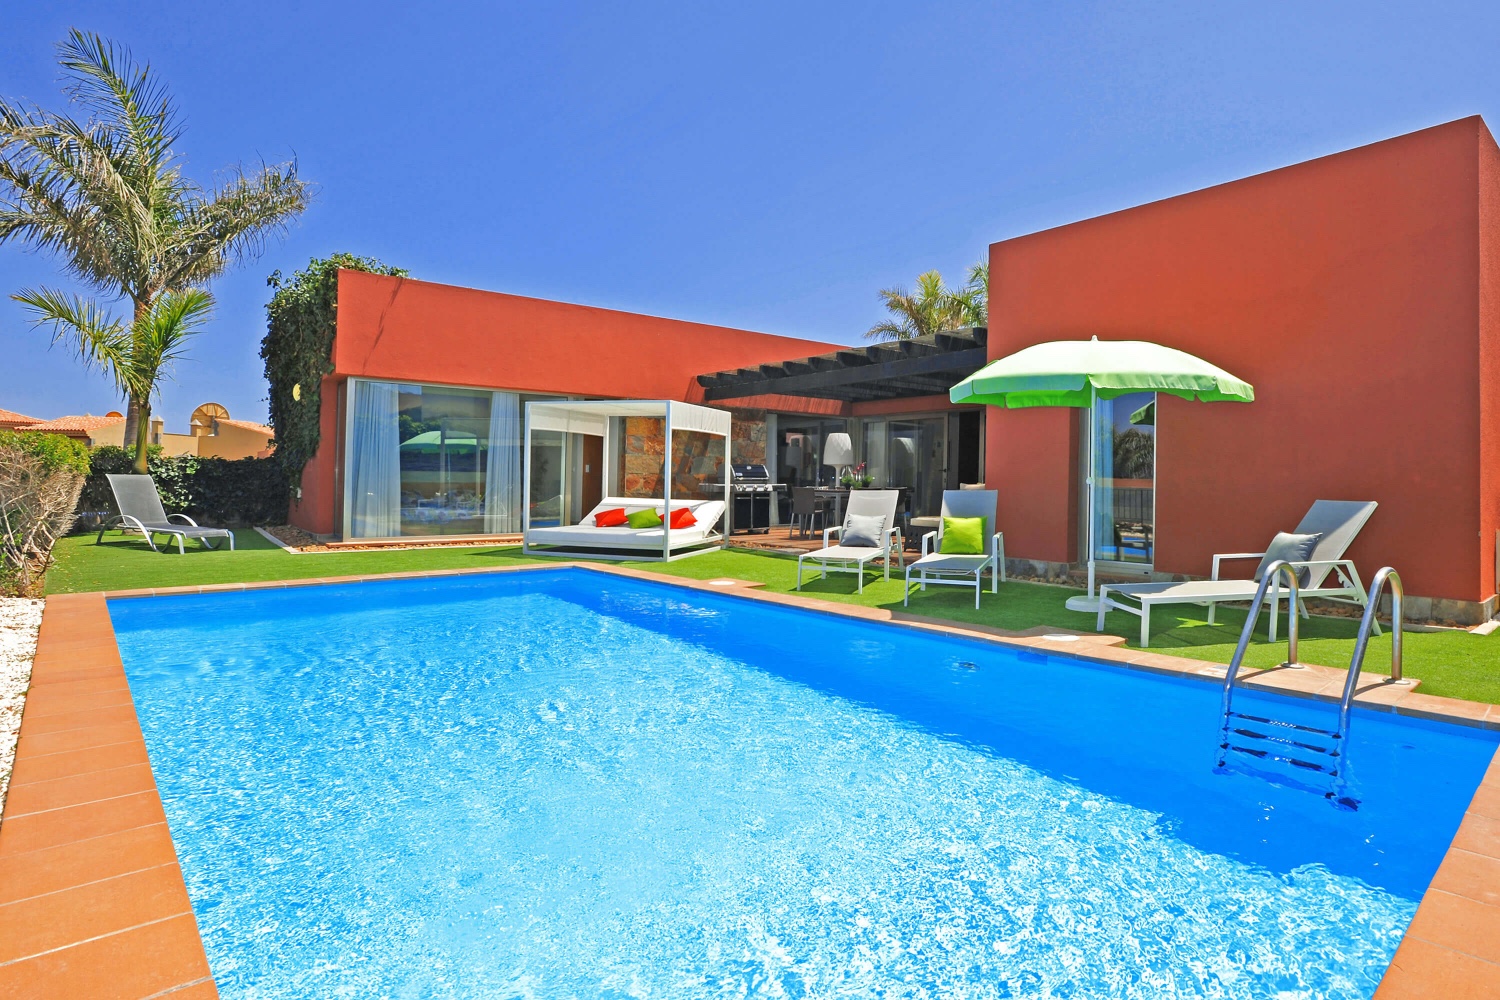 Casa a un piano con camere spaziose e un piacevole spazio esterno con ampia piscina privata e barbecue a gas